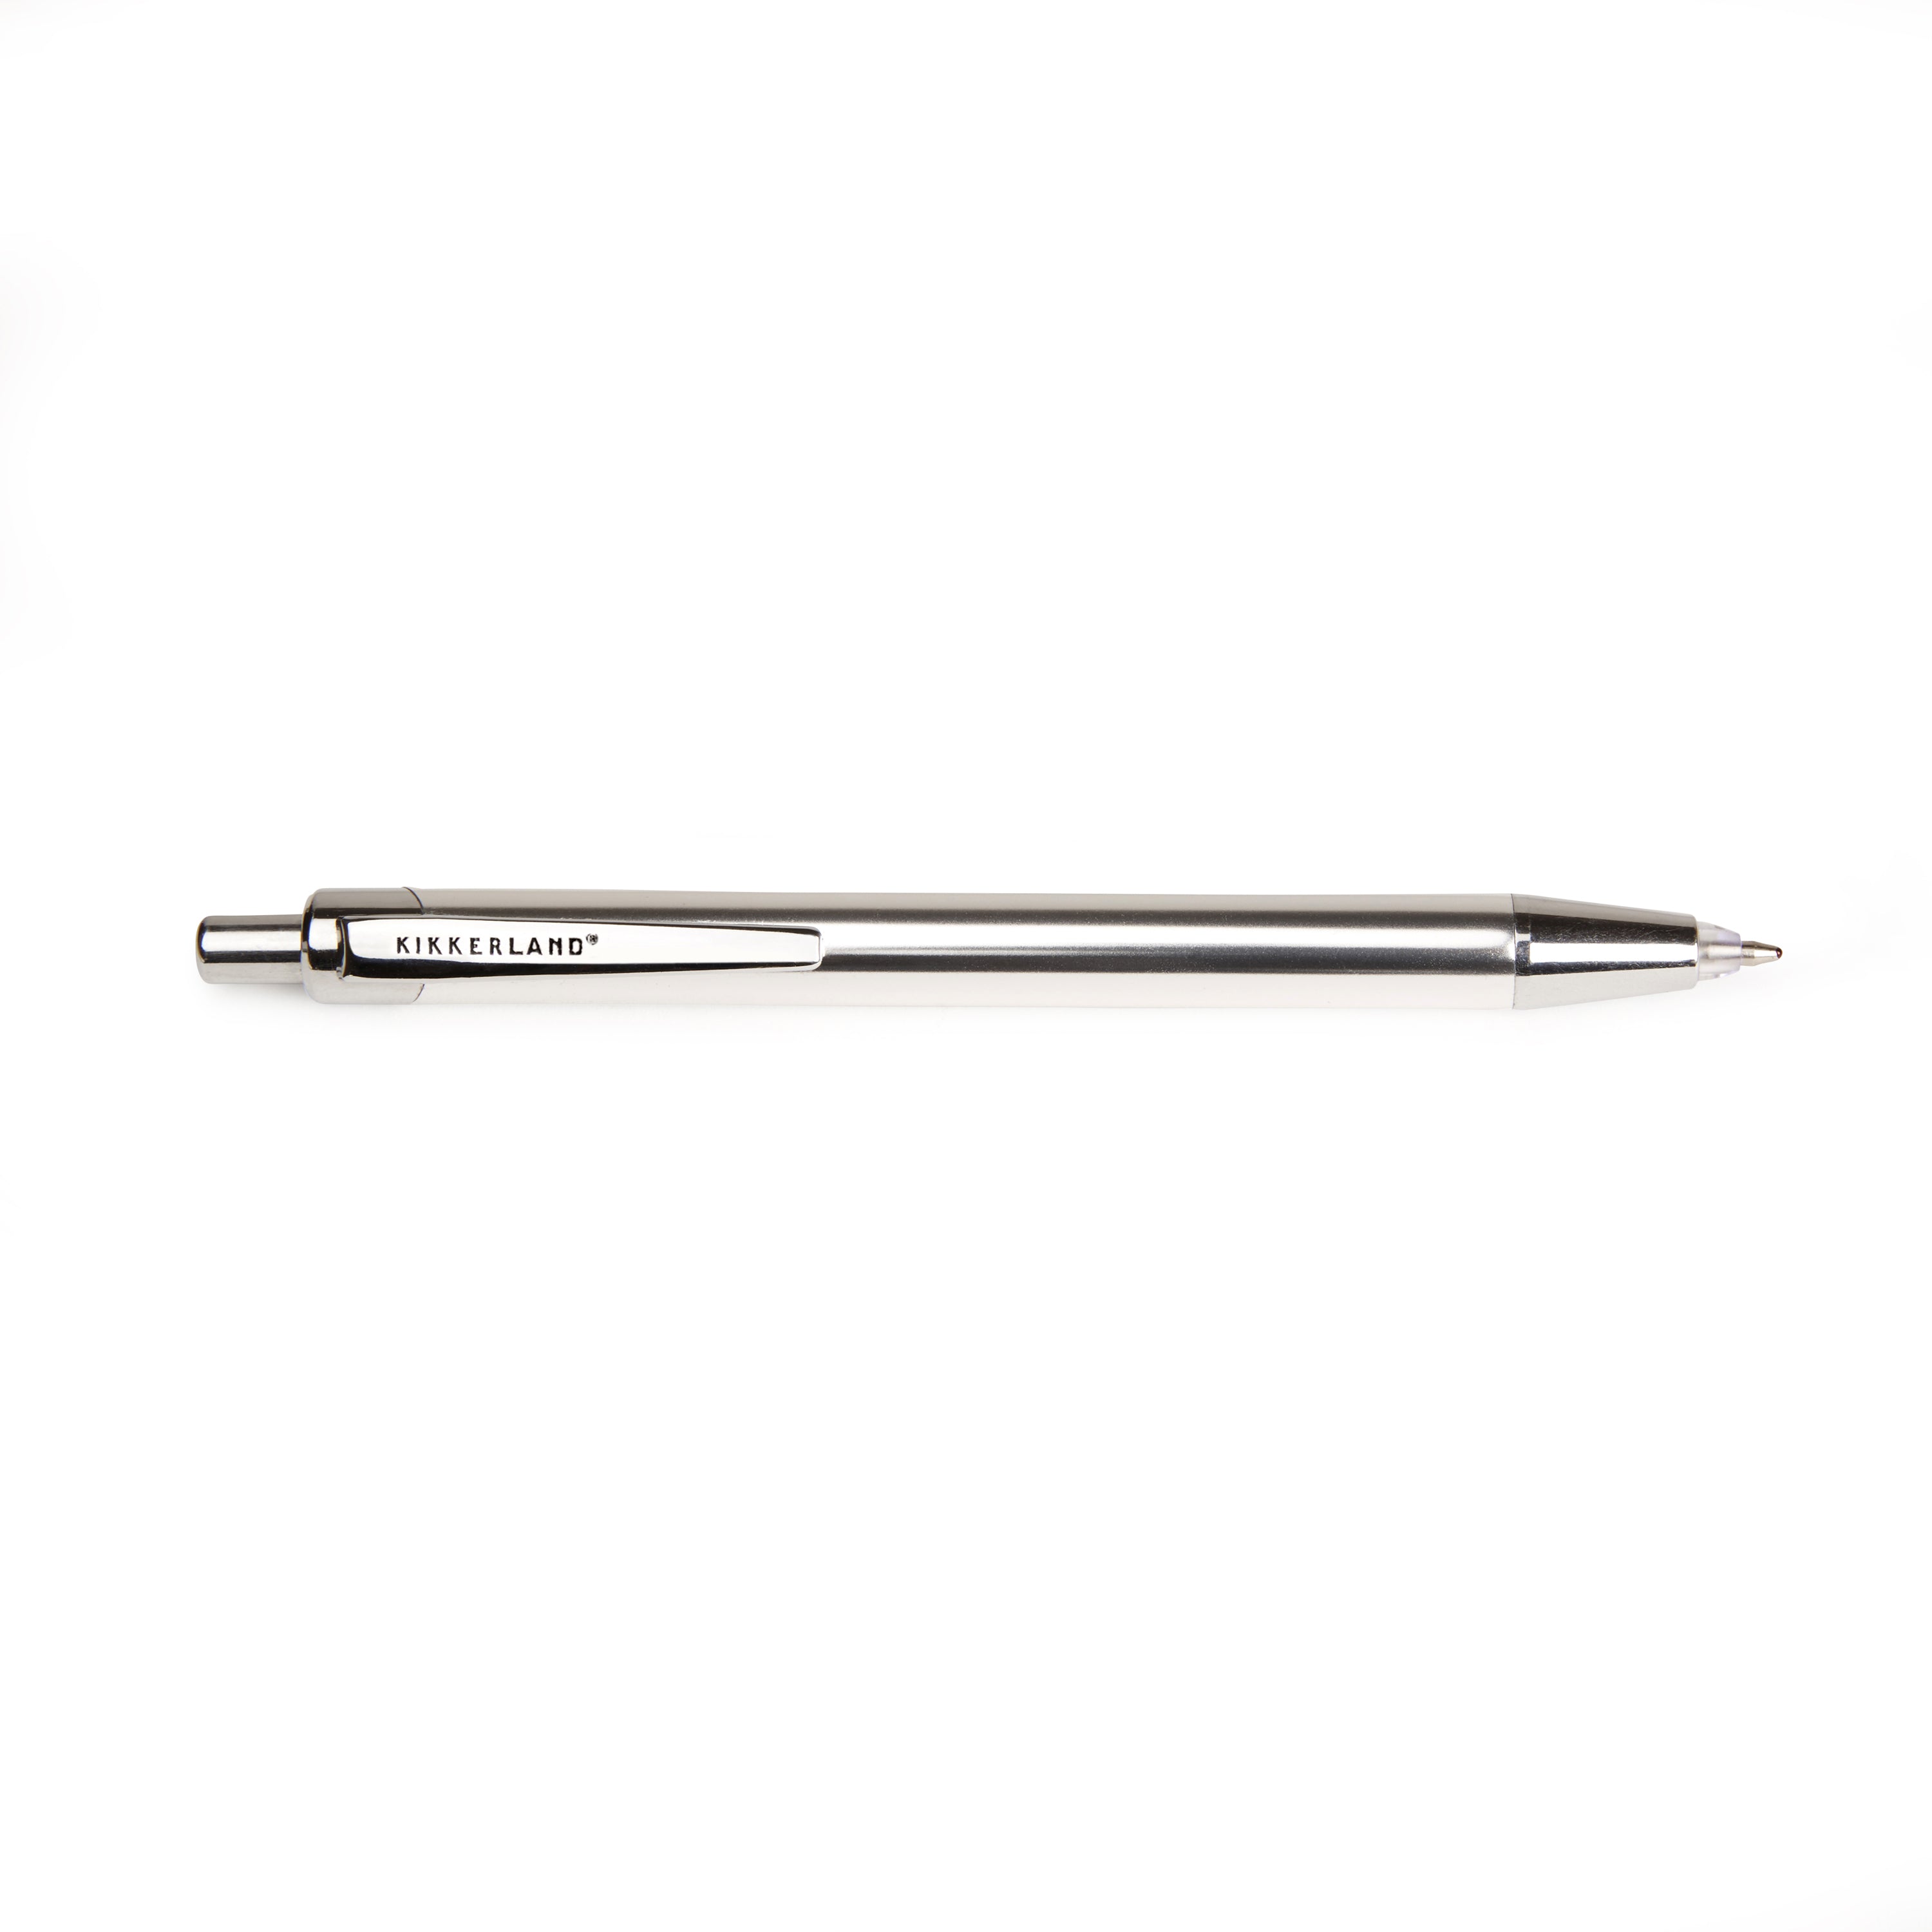 Vintage Multi Pen – Kikkerland Design Inc